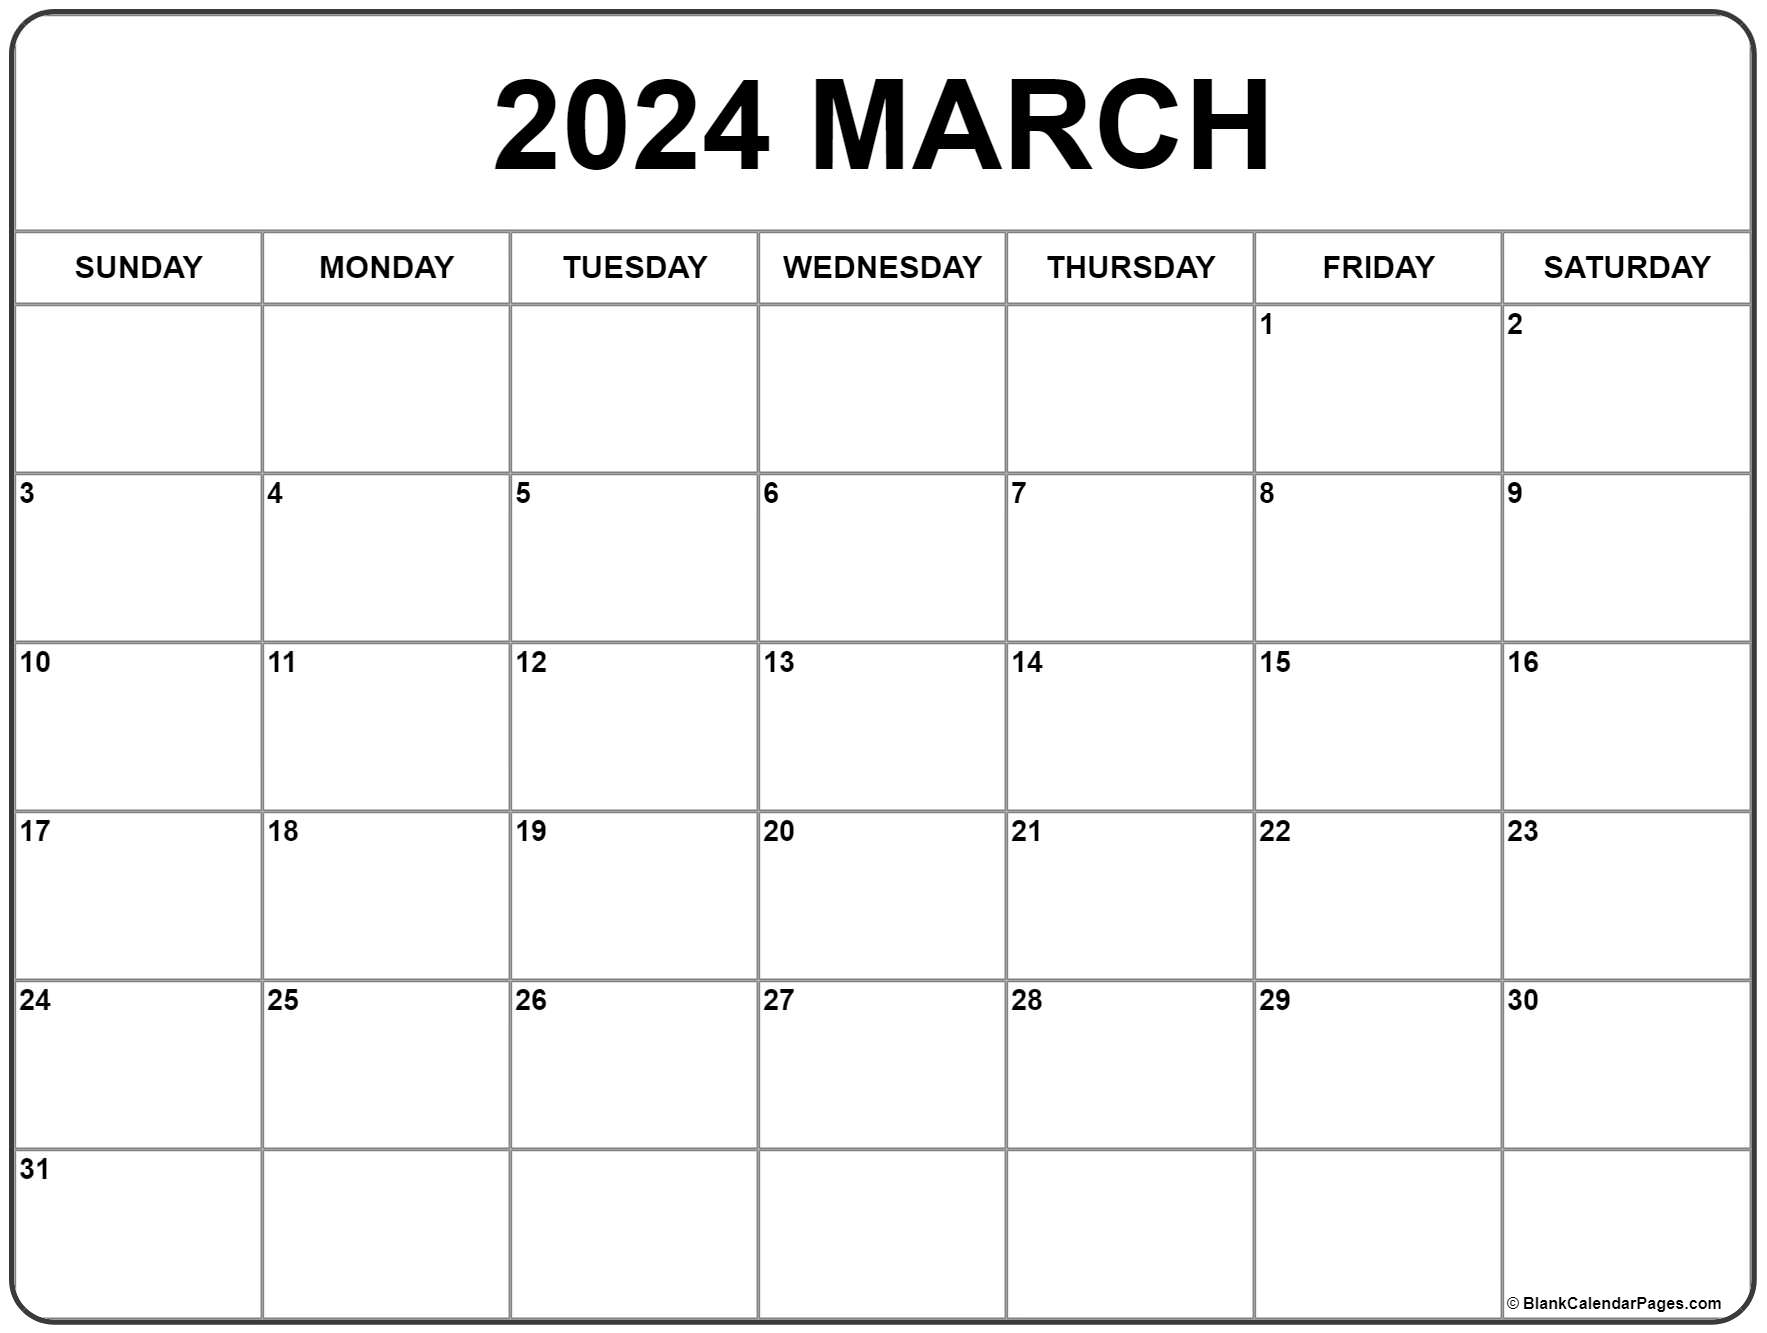 Mar Calendar 2022 March 2022 Calendar | Free Printable Calendar Templates